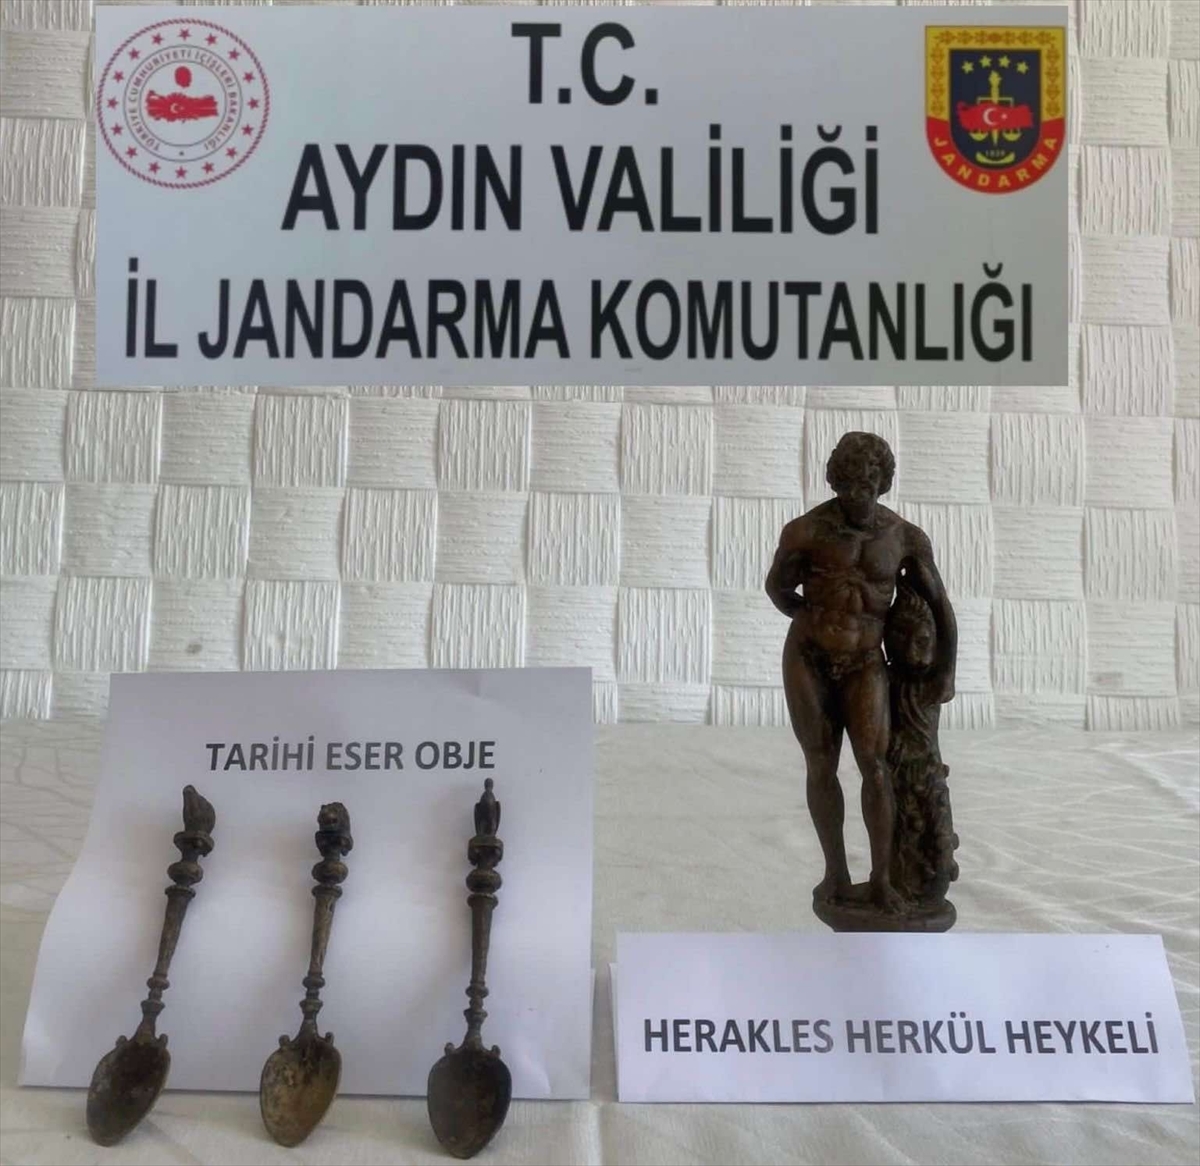 Aydın'daki Tarihi Eser Operasyonunda Herakles Heykeli Ele Geçirildi